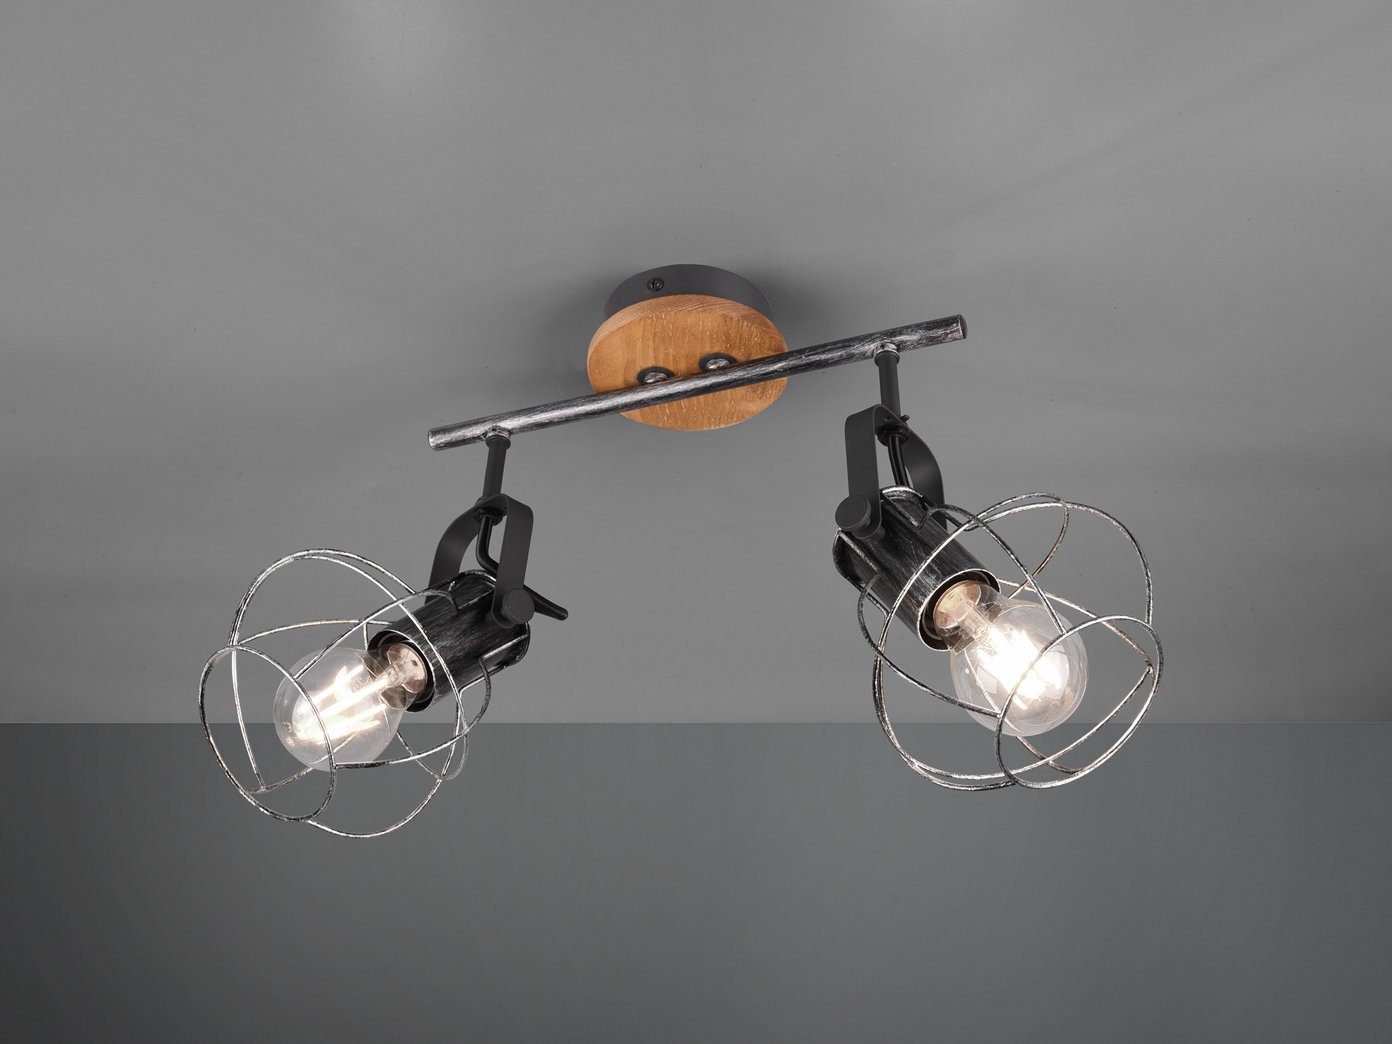 meineWunschleuchte LED Deckenstrahler, Holz-Baldachin mit Lampen-Schirme  Draht, Coole Gitter-Lampe Industrial 2 flammig für Treppenhaus,  Flur-Beleuchtung